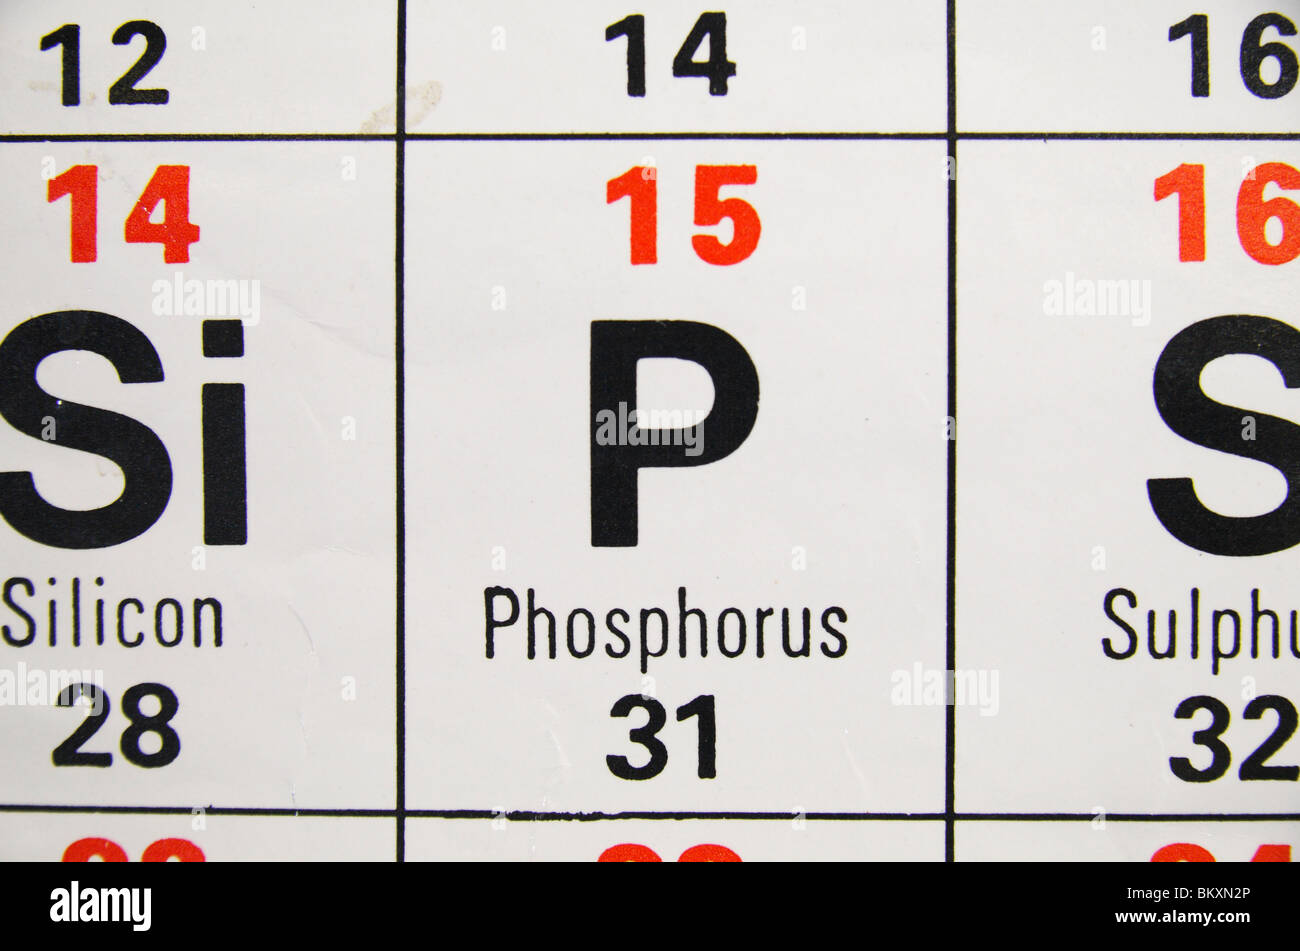 Vista ravvicinata di uno standard UK high school tavola periodica concentrandosi sulla metalloide, fosforo. Foto Stock